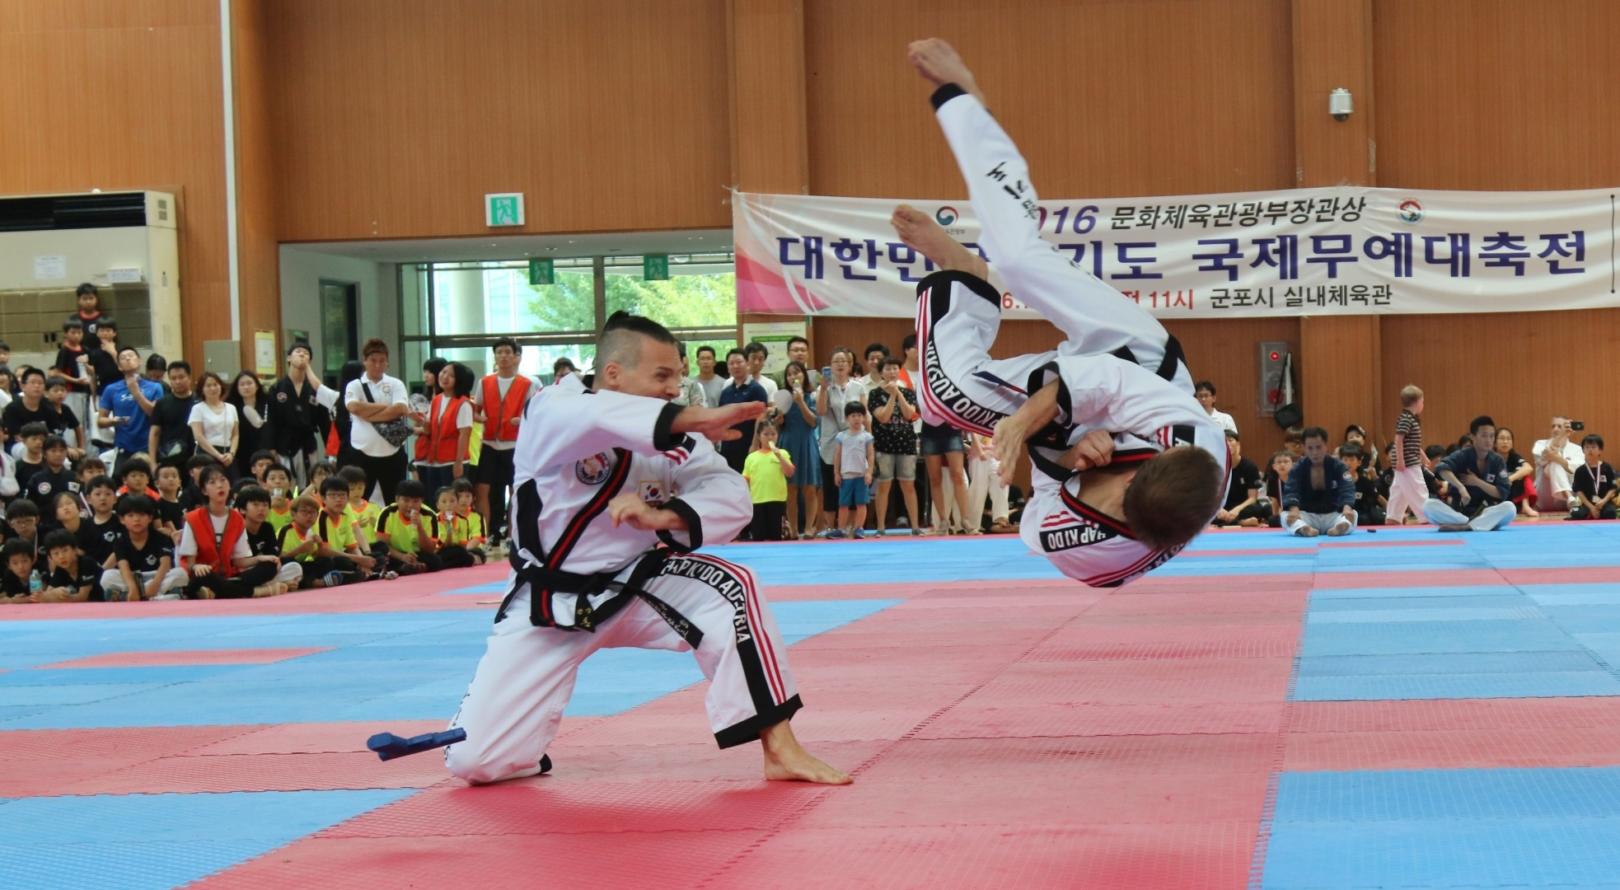 Selbstverteidigung (Hoshinsul). Internationale Meisterschaften in Korea, 2016. Hapkido ist eine koreanische Kampfkunst zur Selbstverteidigung.